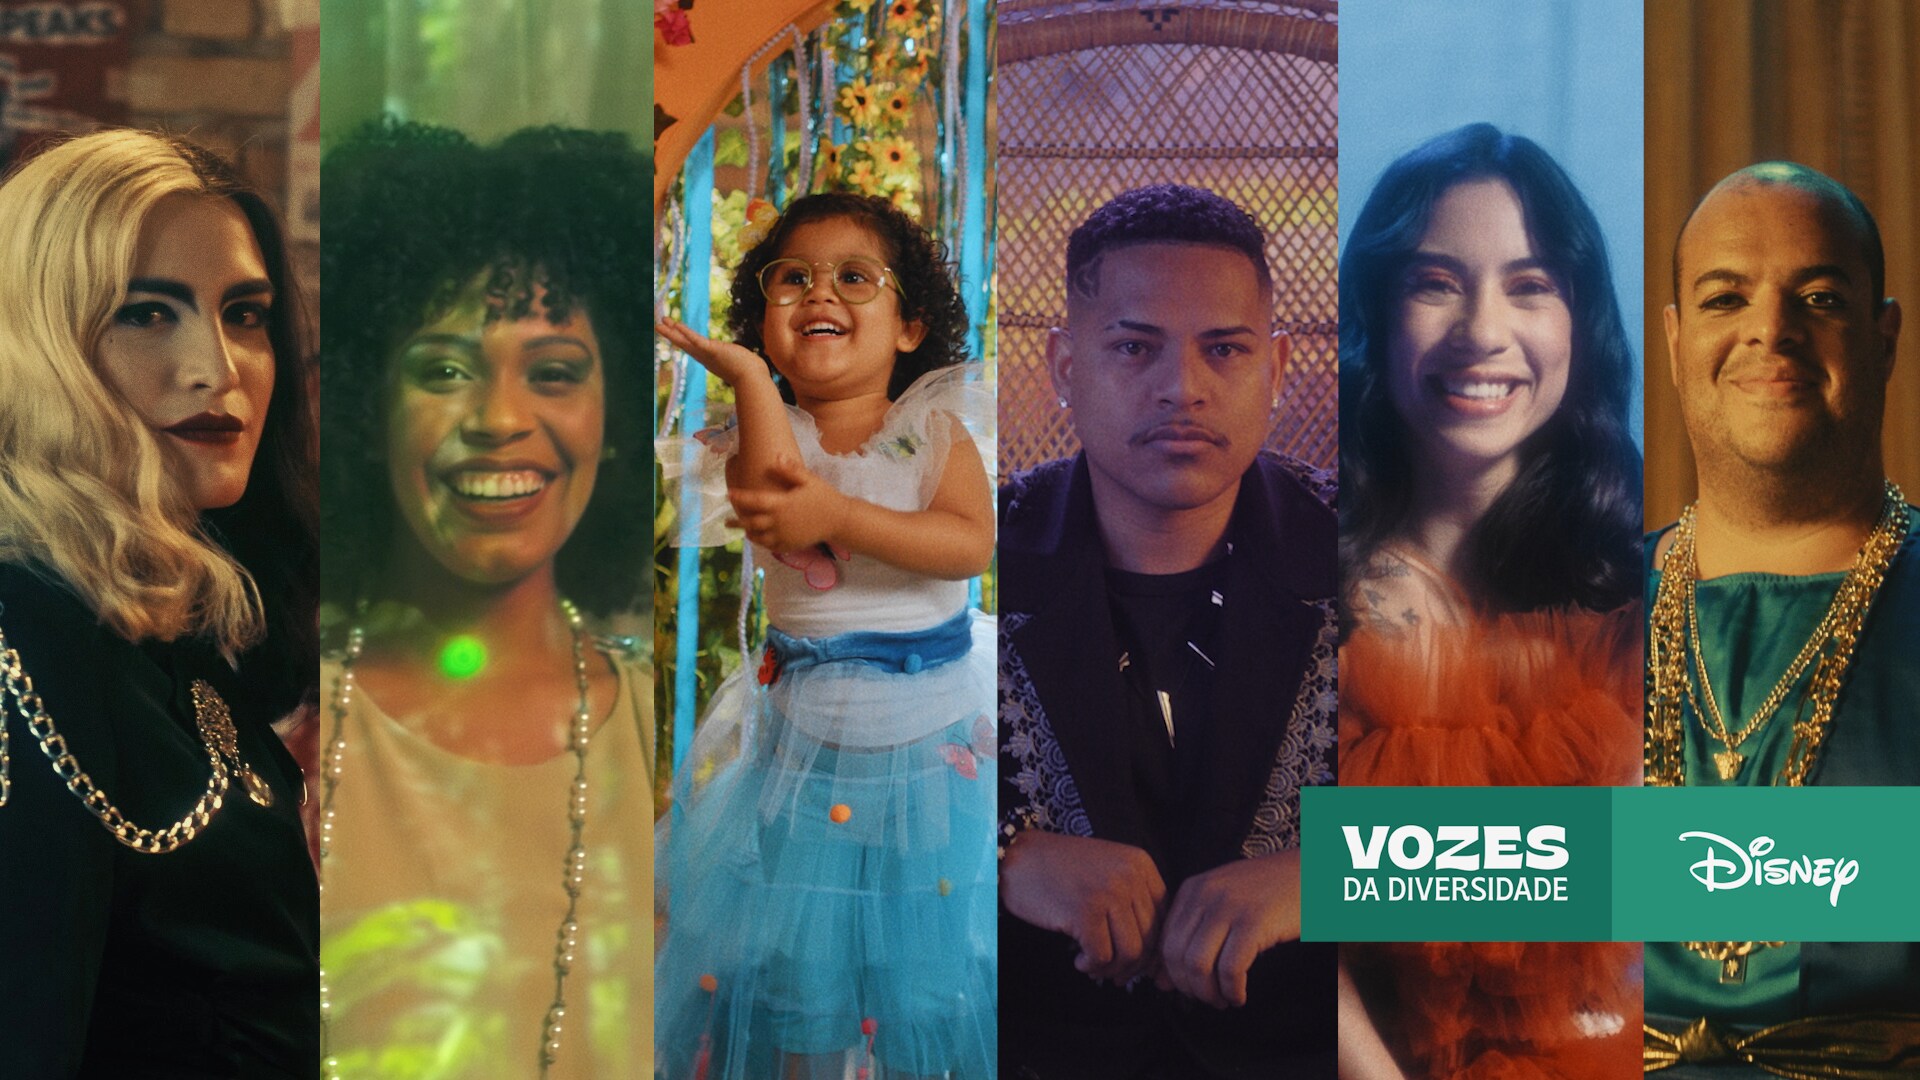 Disney Brasil abraça as “Vozes da Diversidade” em série documental